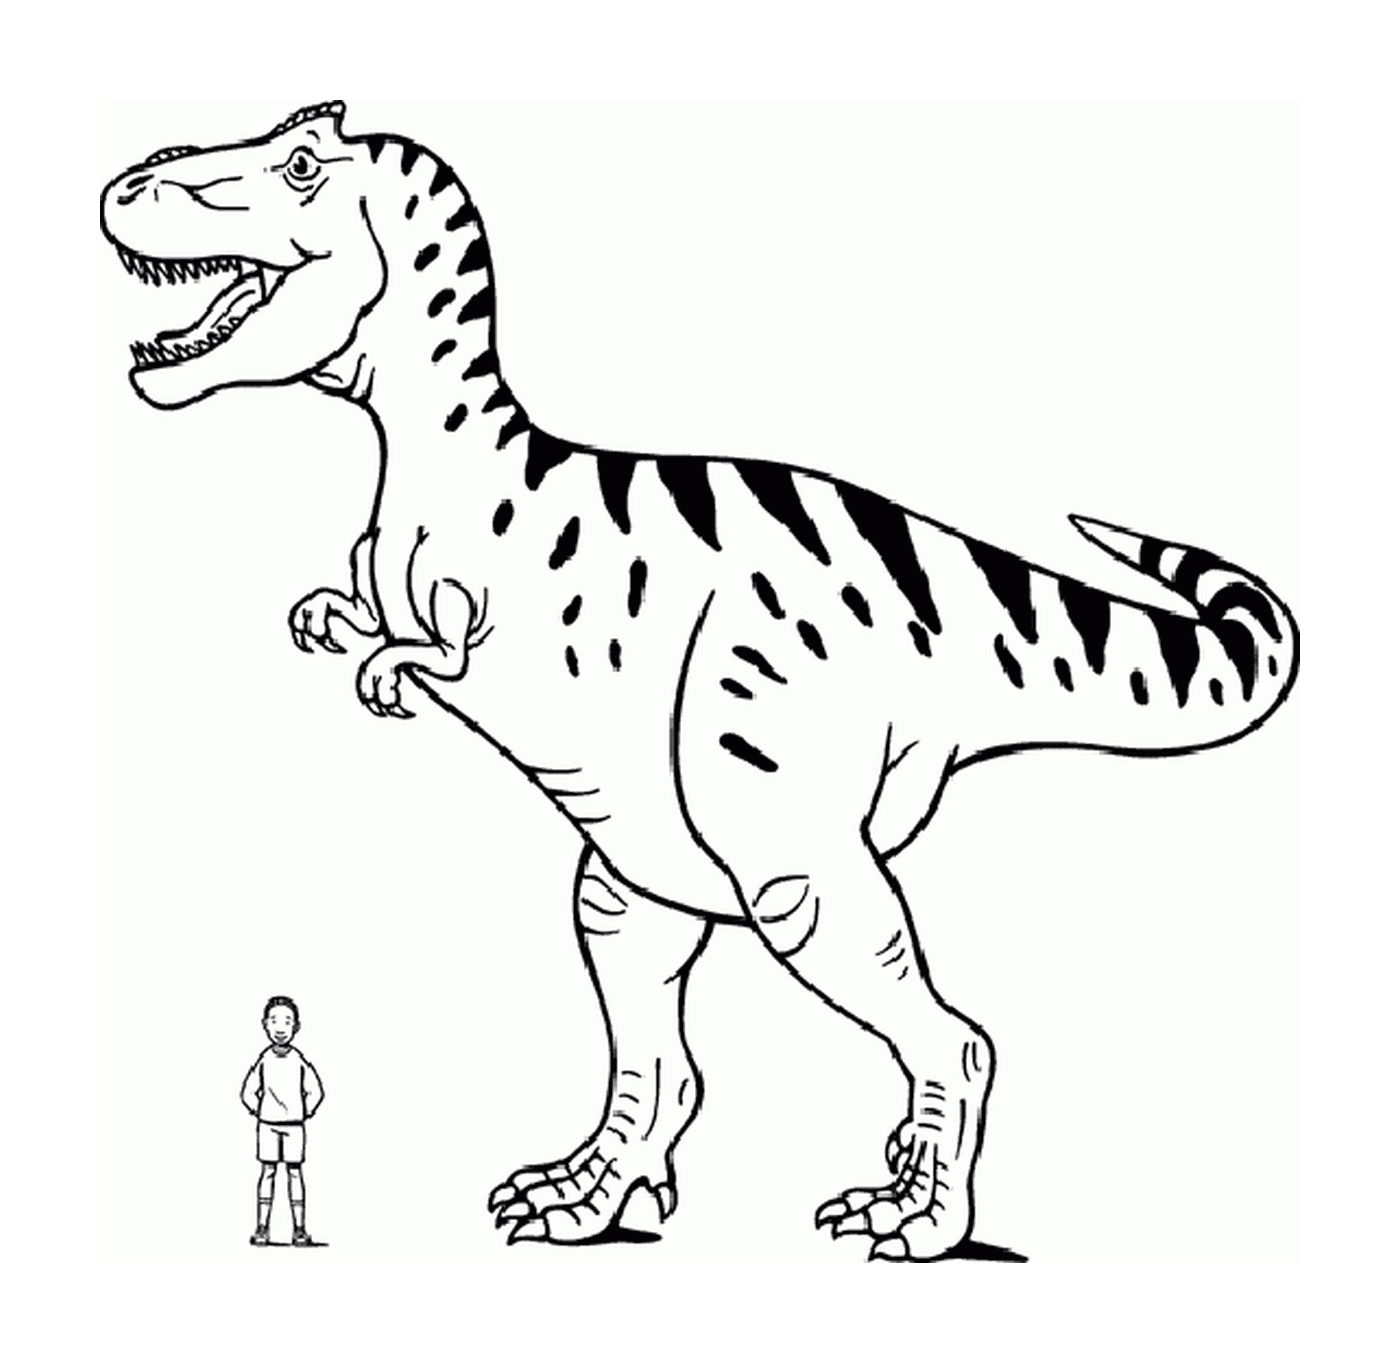  Ein Tyrannosaurier, der neben einer Person steht 